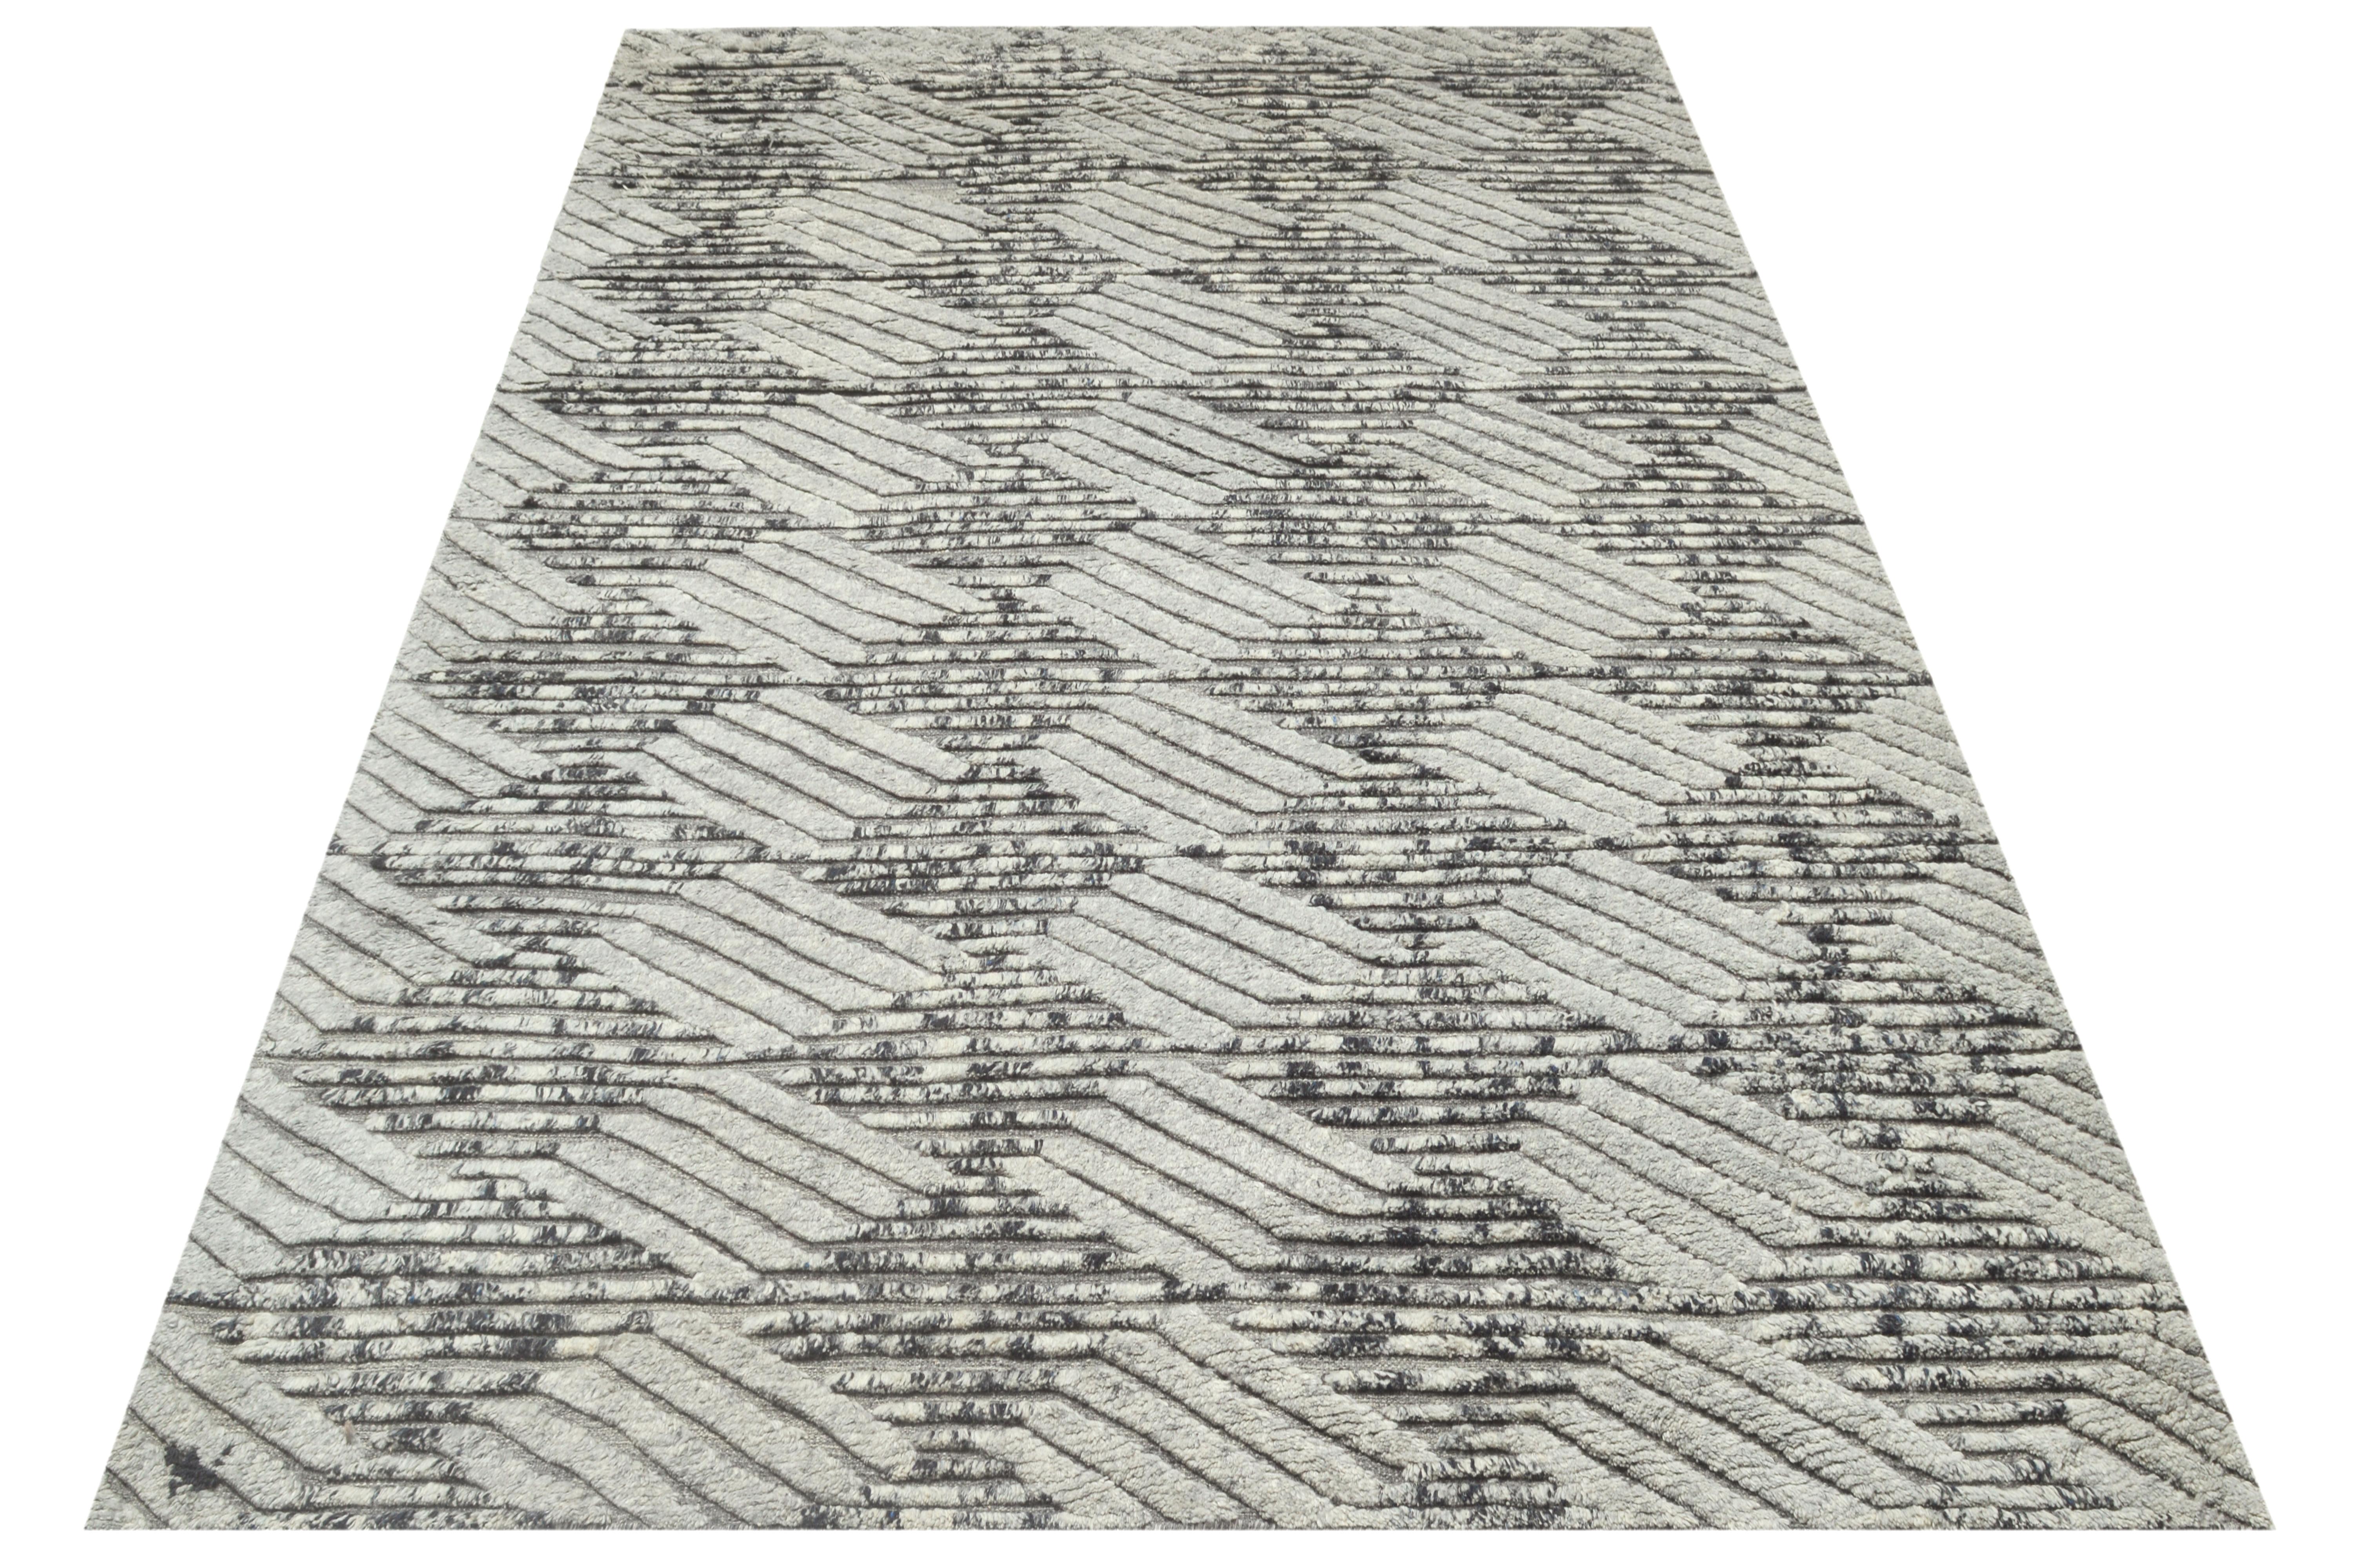 Poils de laine noués à la main sur une base de coton.

Dimensions approximatives : 10' x 14'

Origine : Inde

Couleur du champ : argent

Couleur d'accent : gris, anthracite.